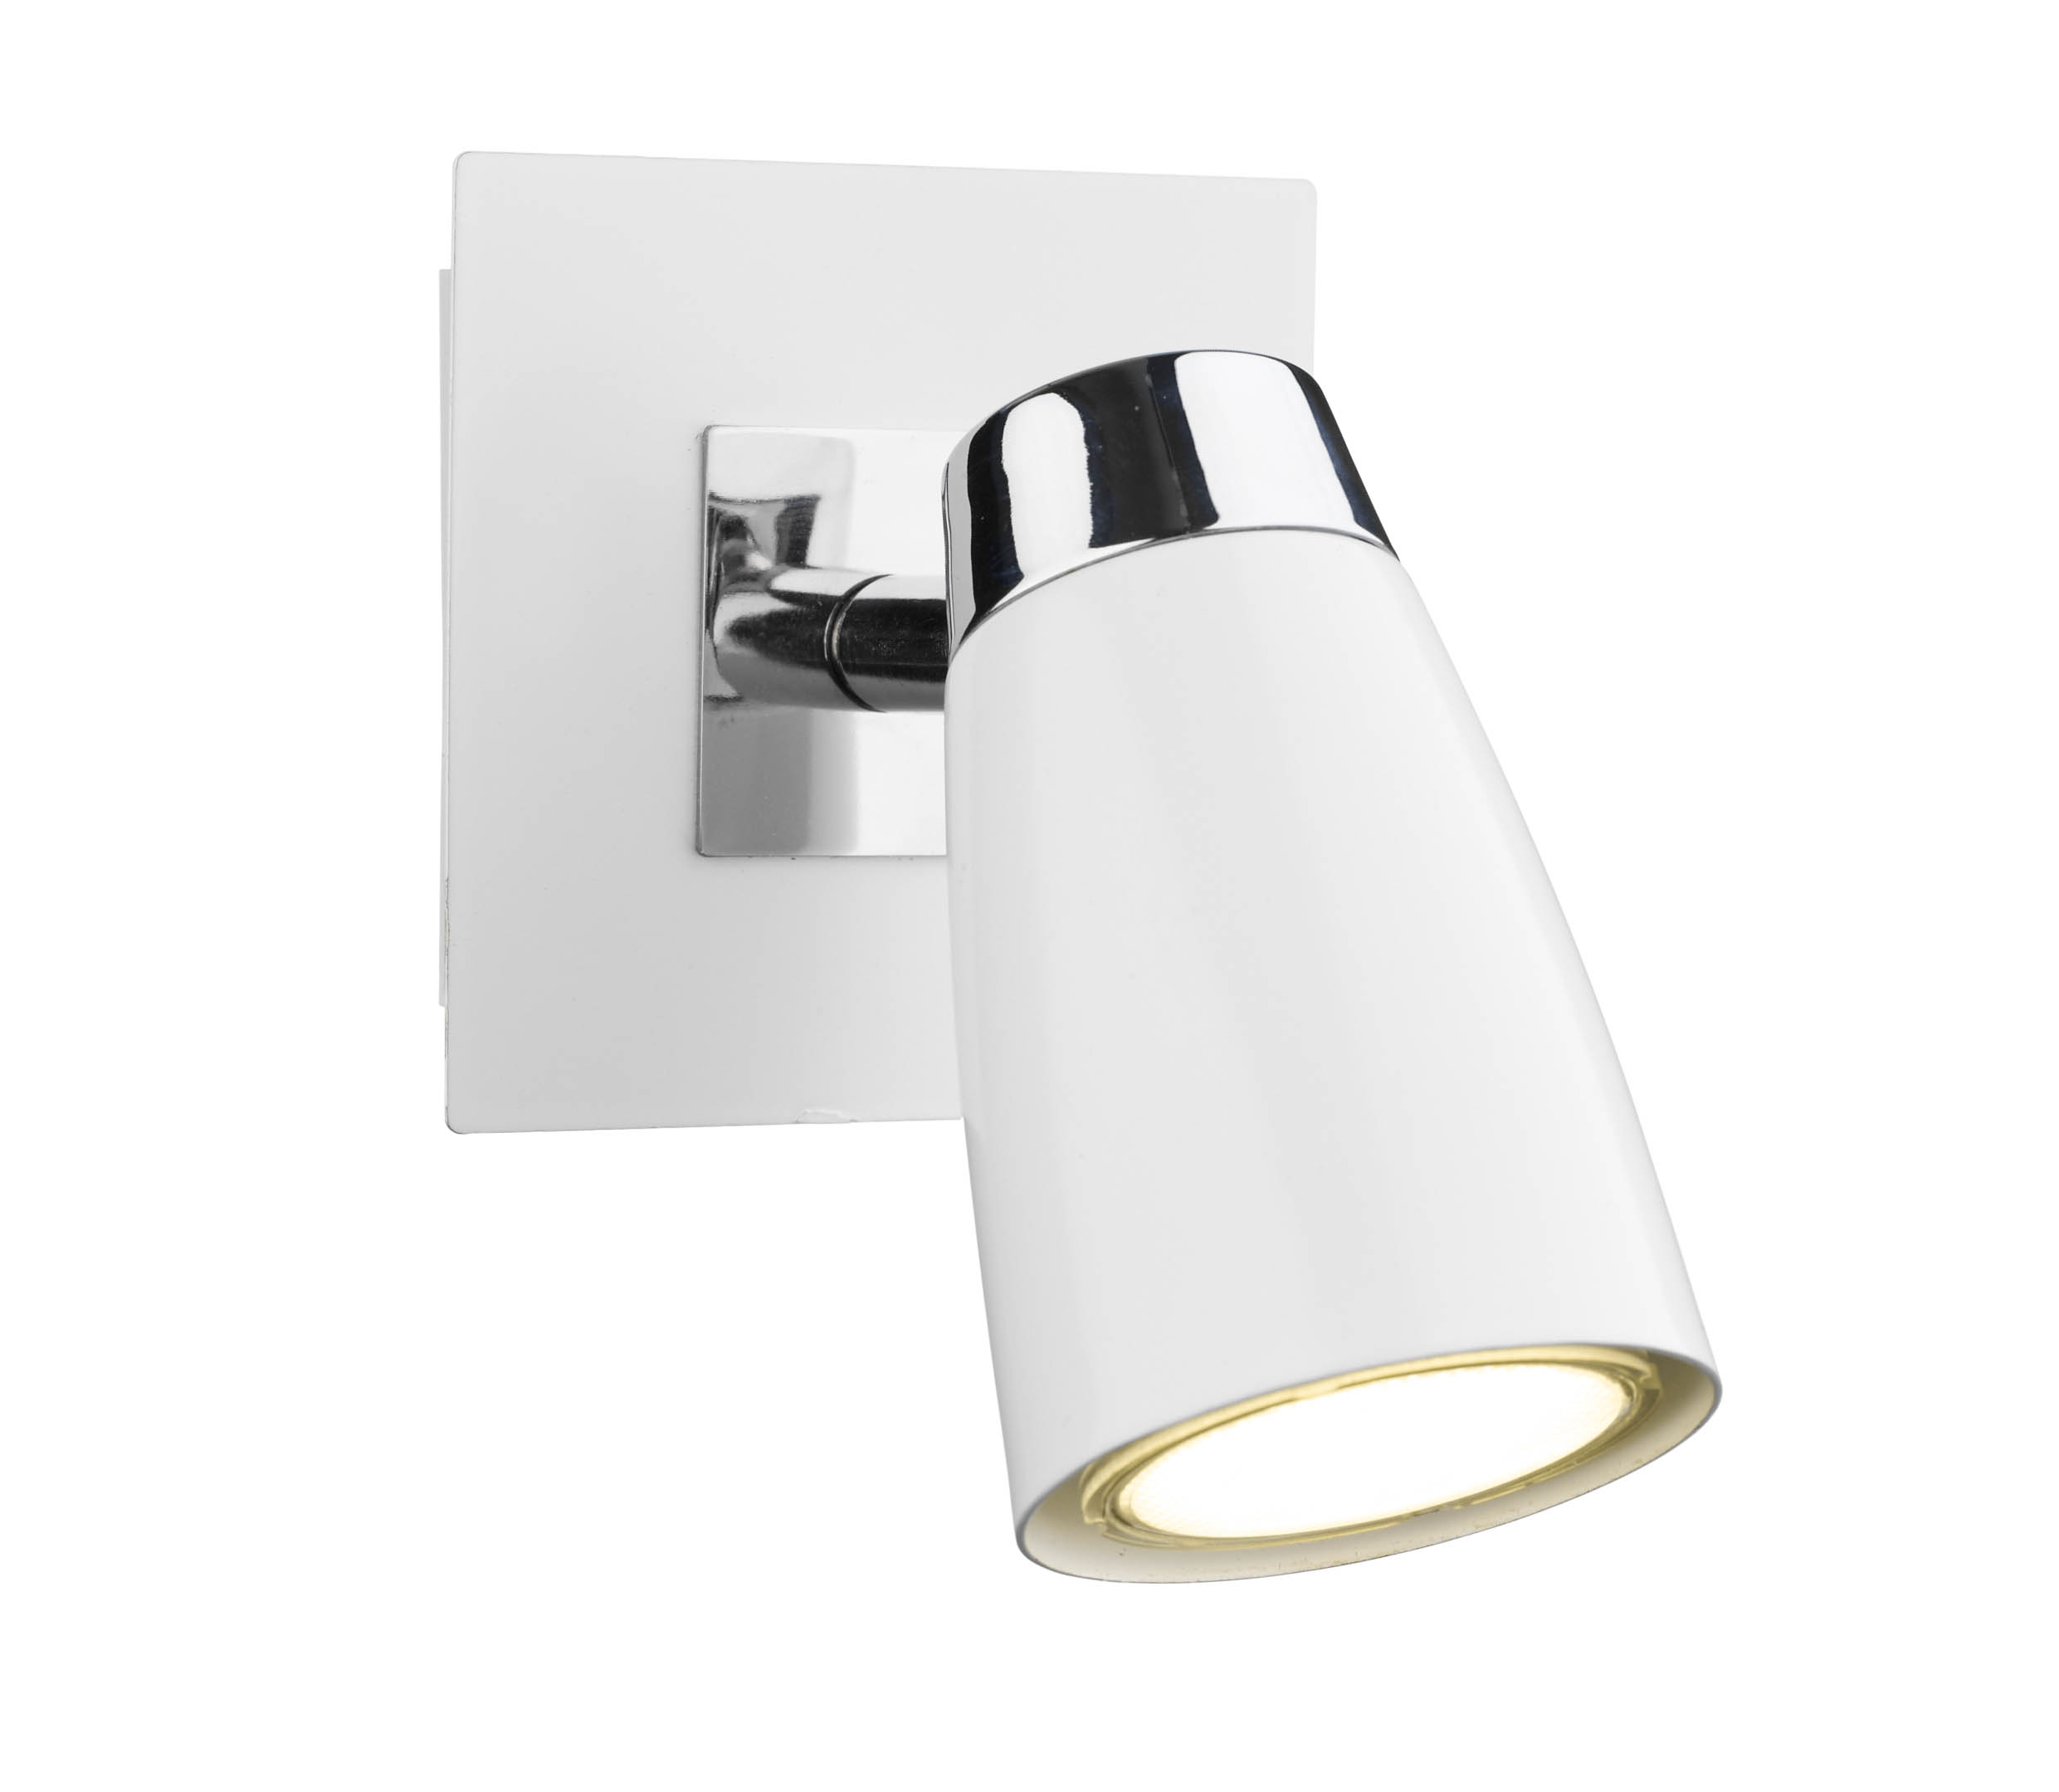 Loft 1 light modern wall spotlight matt white and polished chrome finish (SWITCHED)